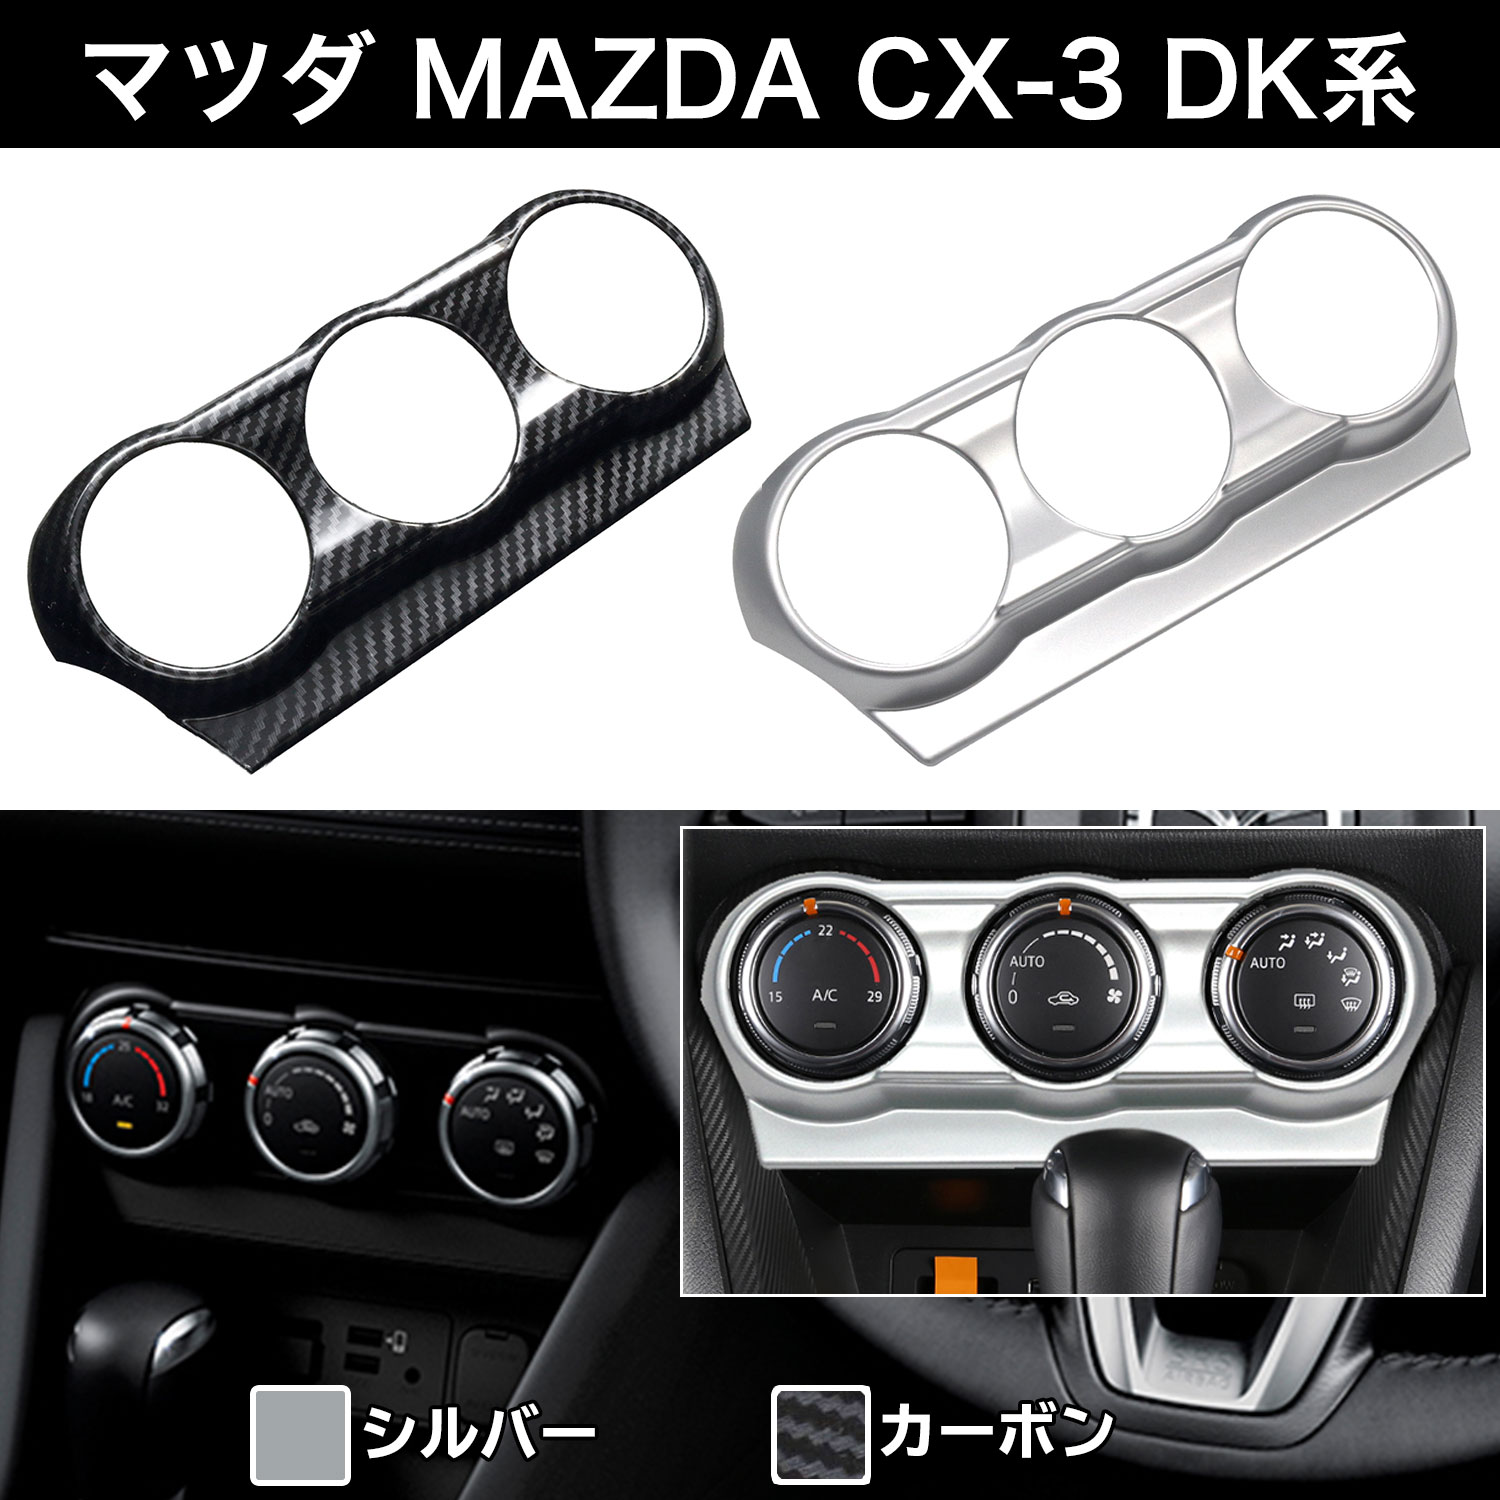 【楽天1位】マツダ MAZDA CX-3 DK系 デミオ DEMIO DJ5 エアコンスイッチパネル シルバー Negesu(ネグエス) 【送料無料】